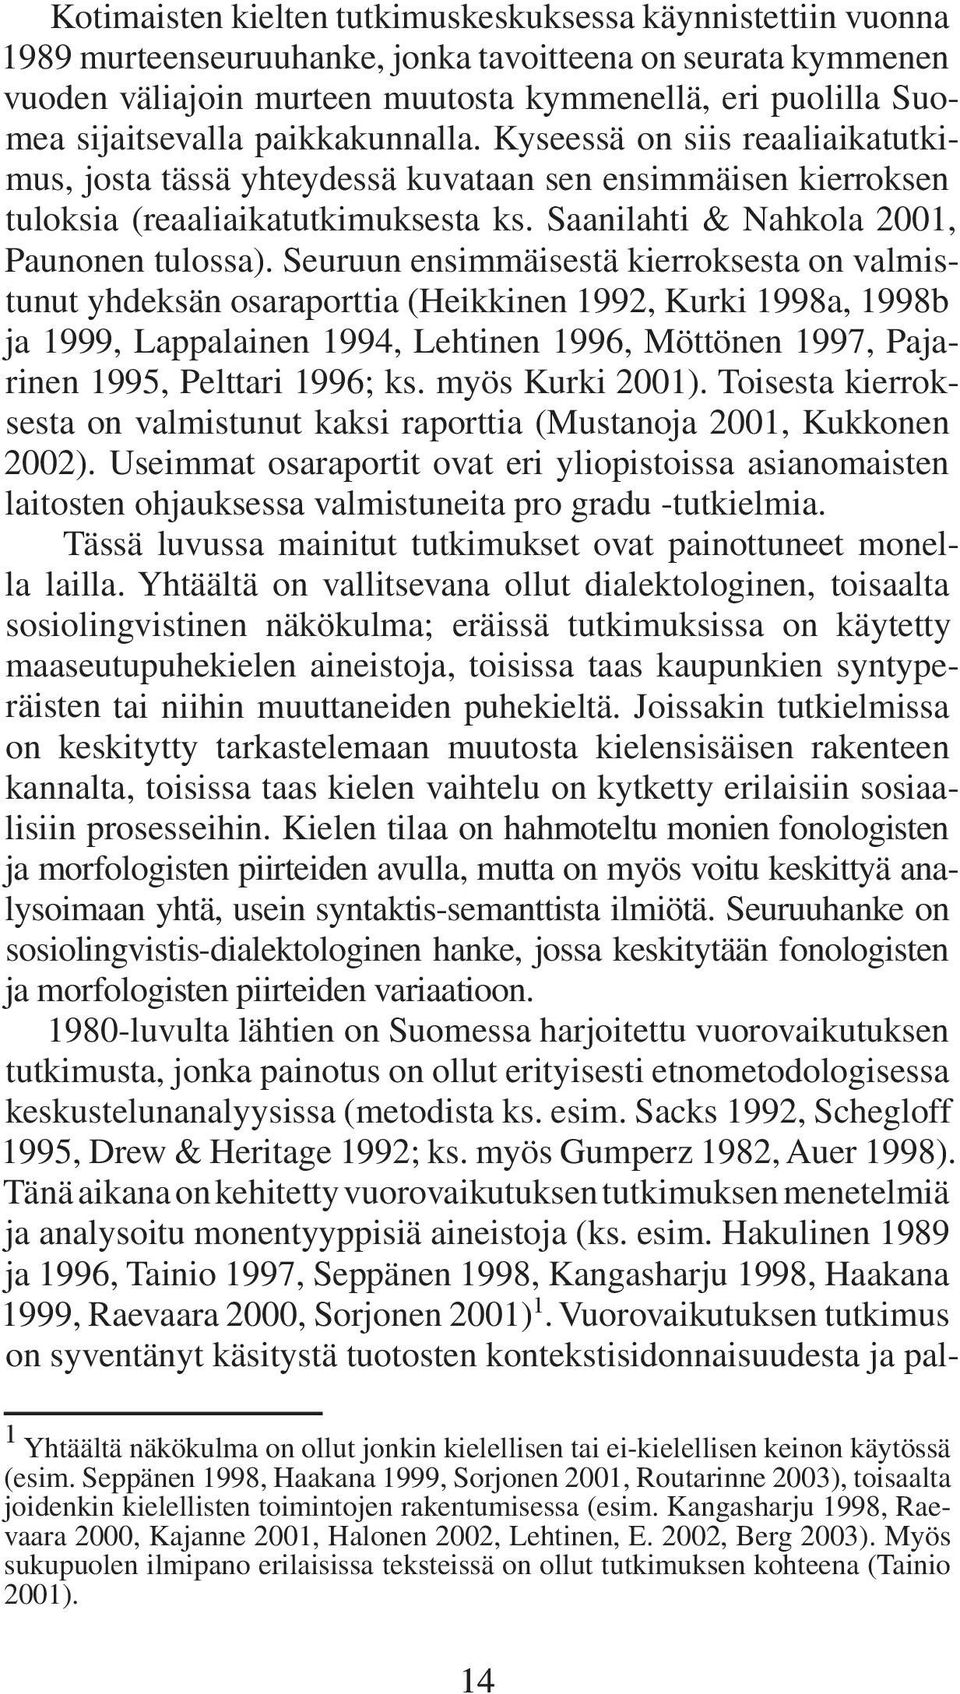 Saanilahti & Nahkola 2001, Paunonen tulossa).